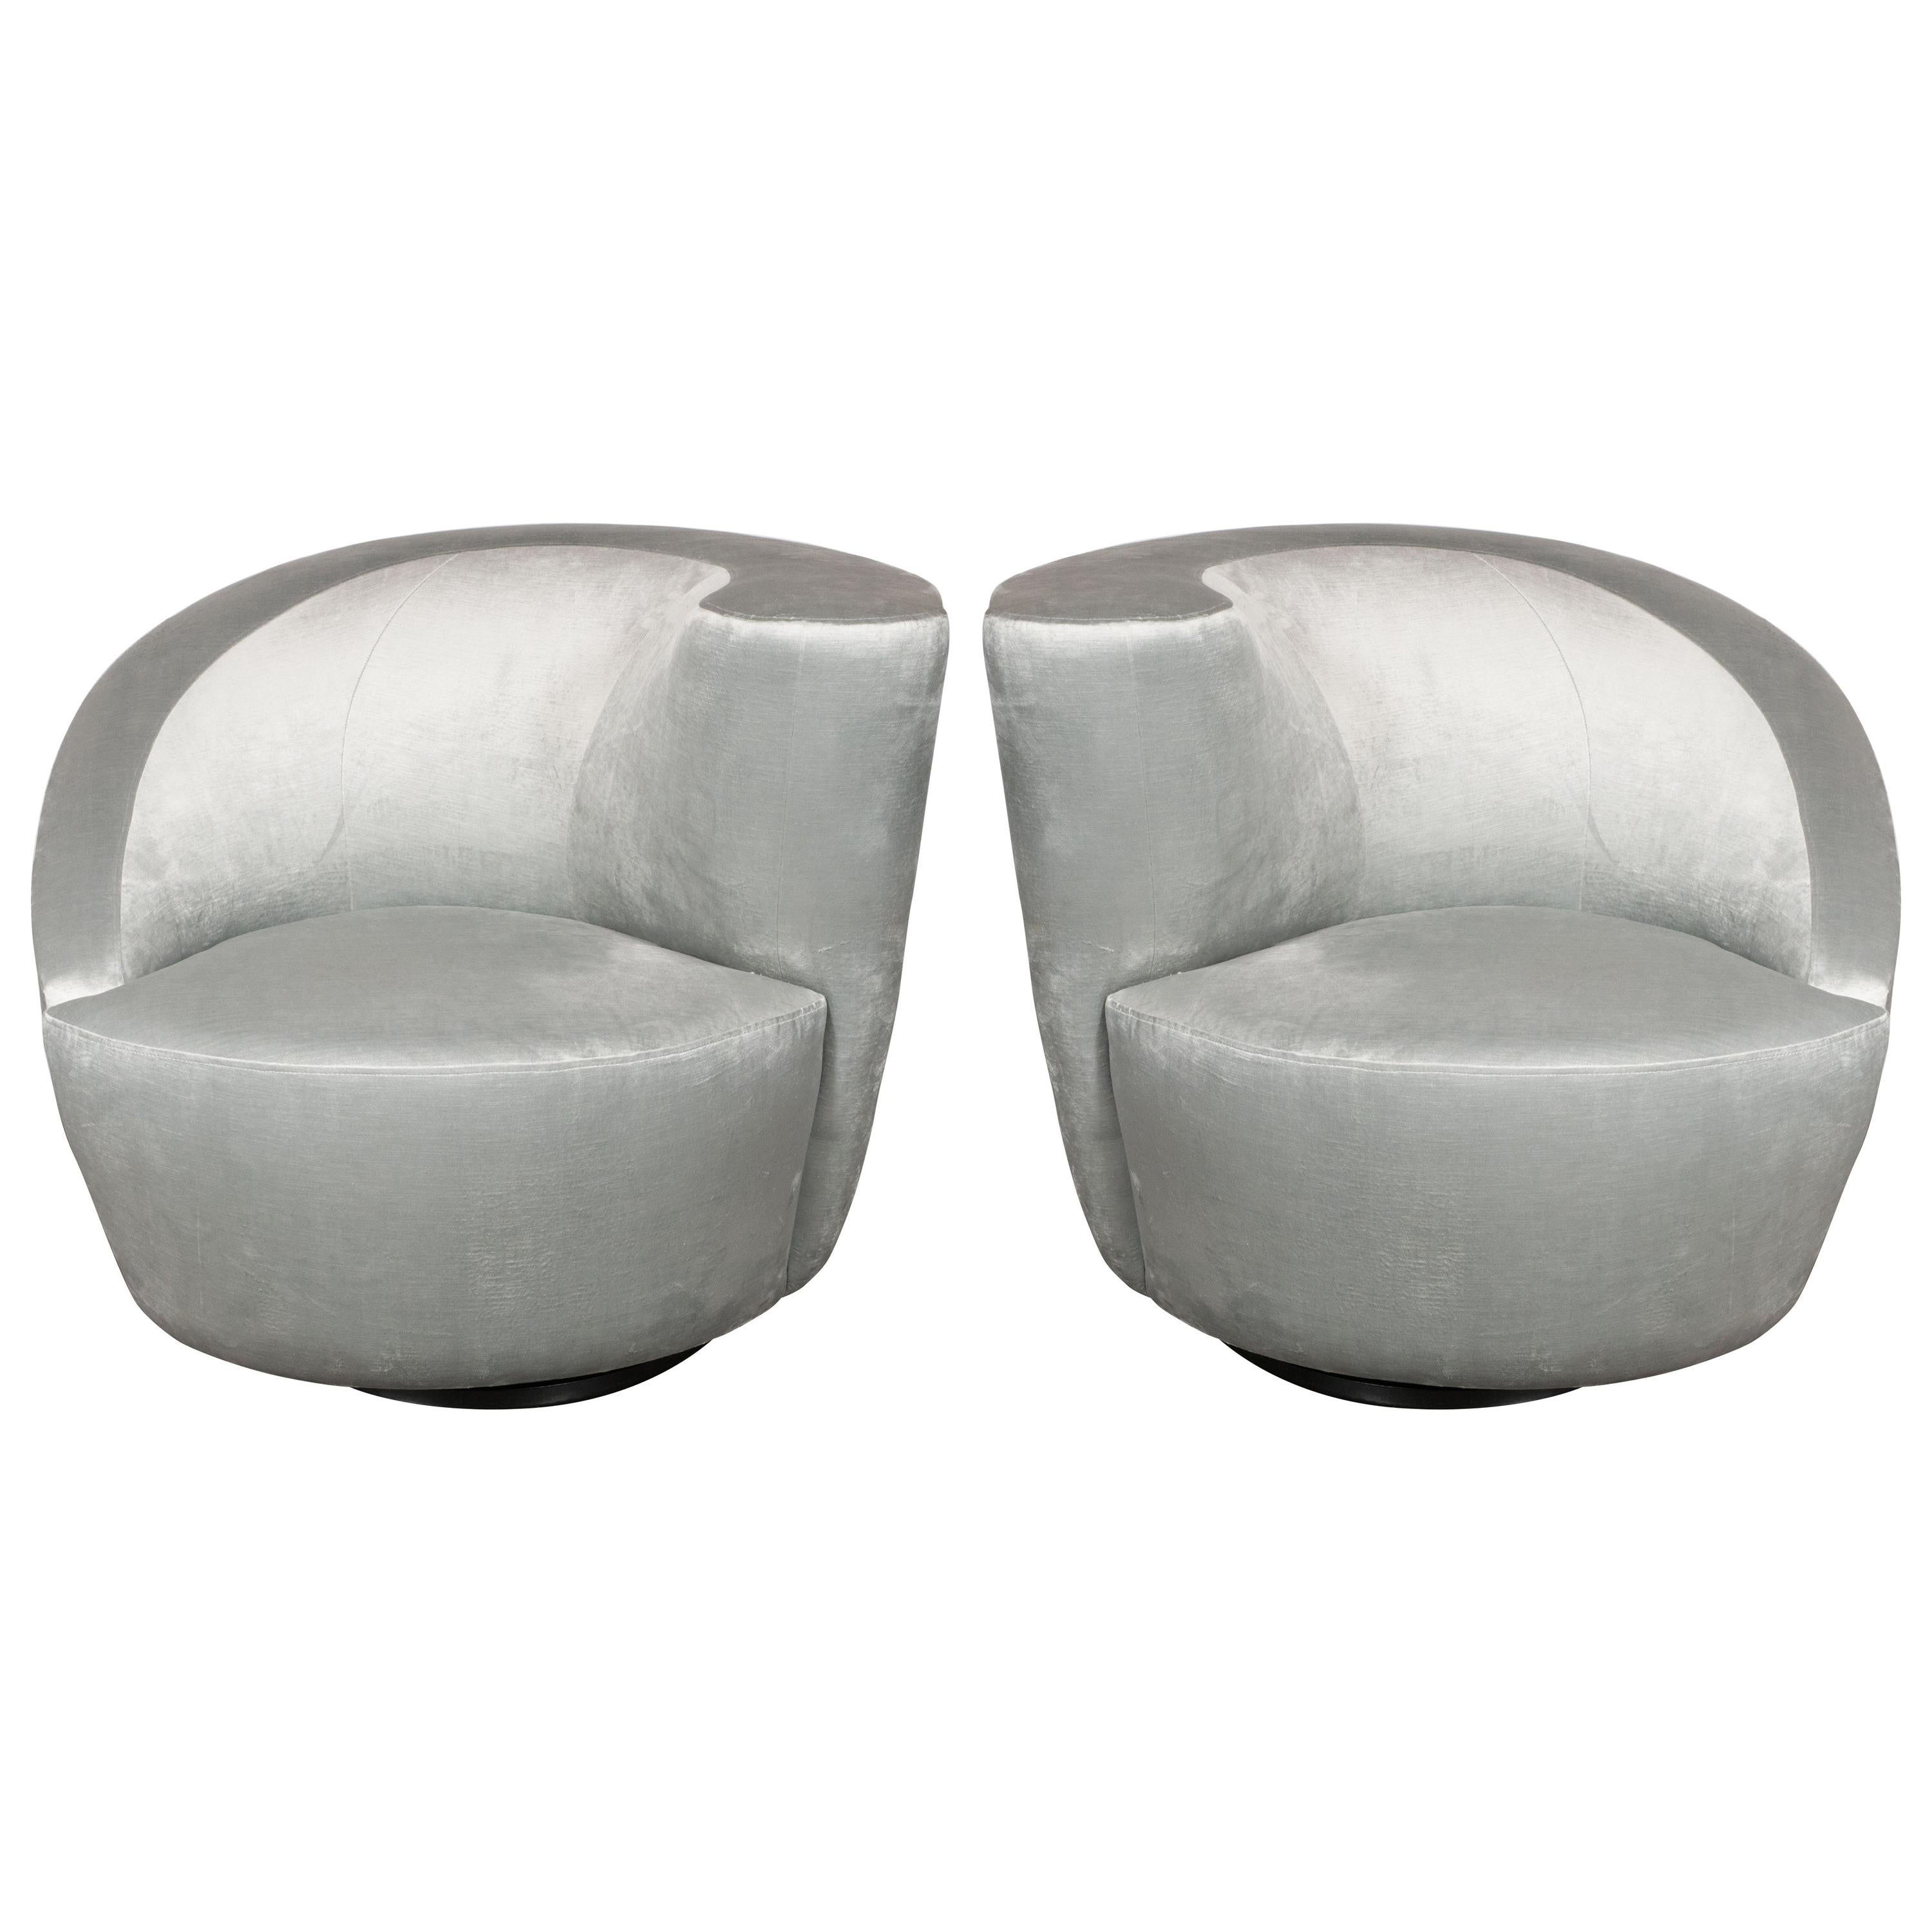 Cette paire de chaises Nautilus illustre les étonnantes formes organiques futuristes et les lignes épurées pour lesquelles Vladimir Kagan, l'un des designers de meubles les plus estimés du XXe siècle, est célébré. La forme des chaises suggère une